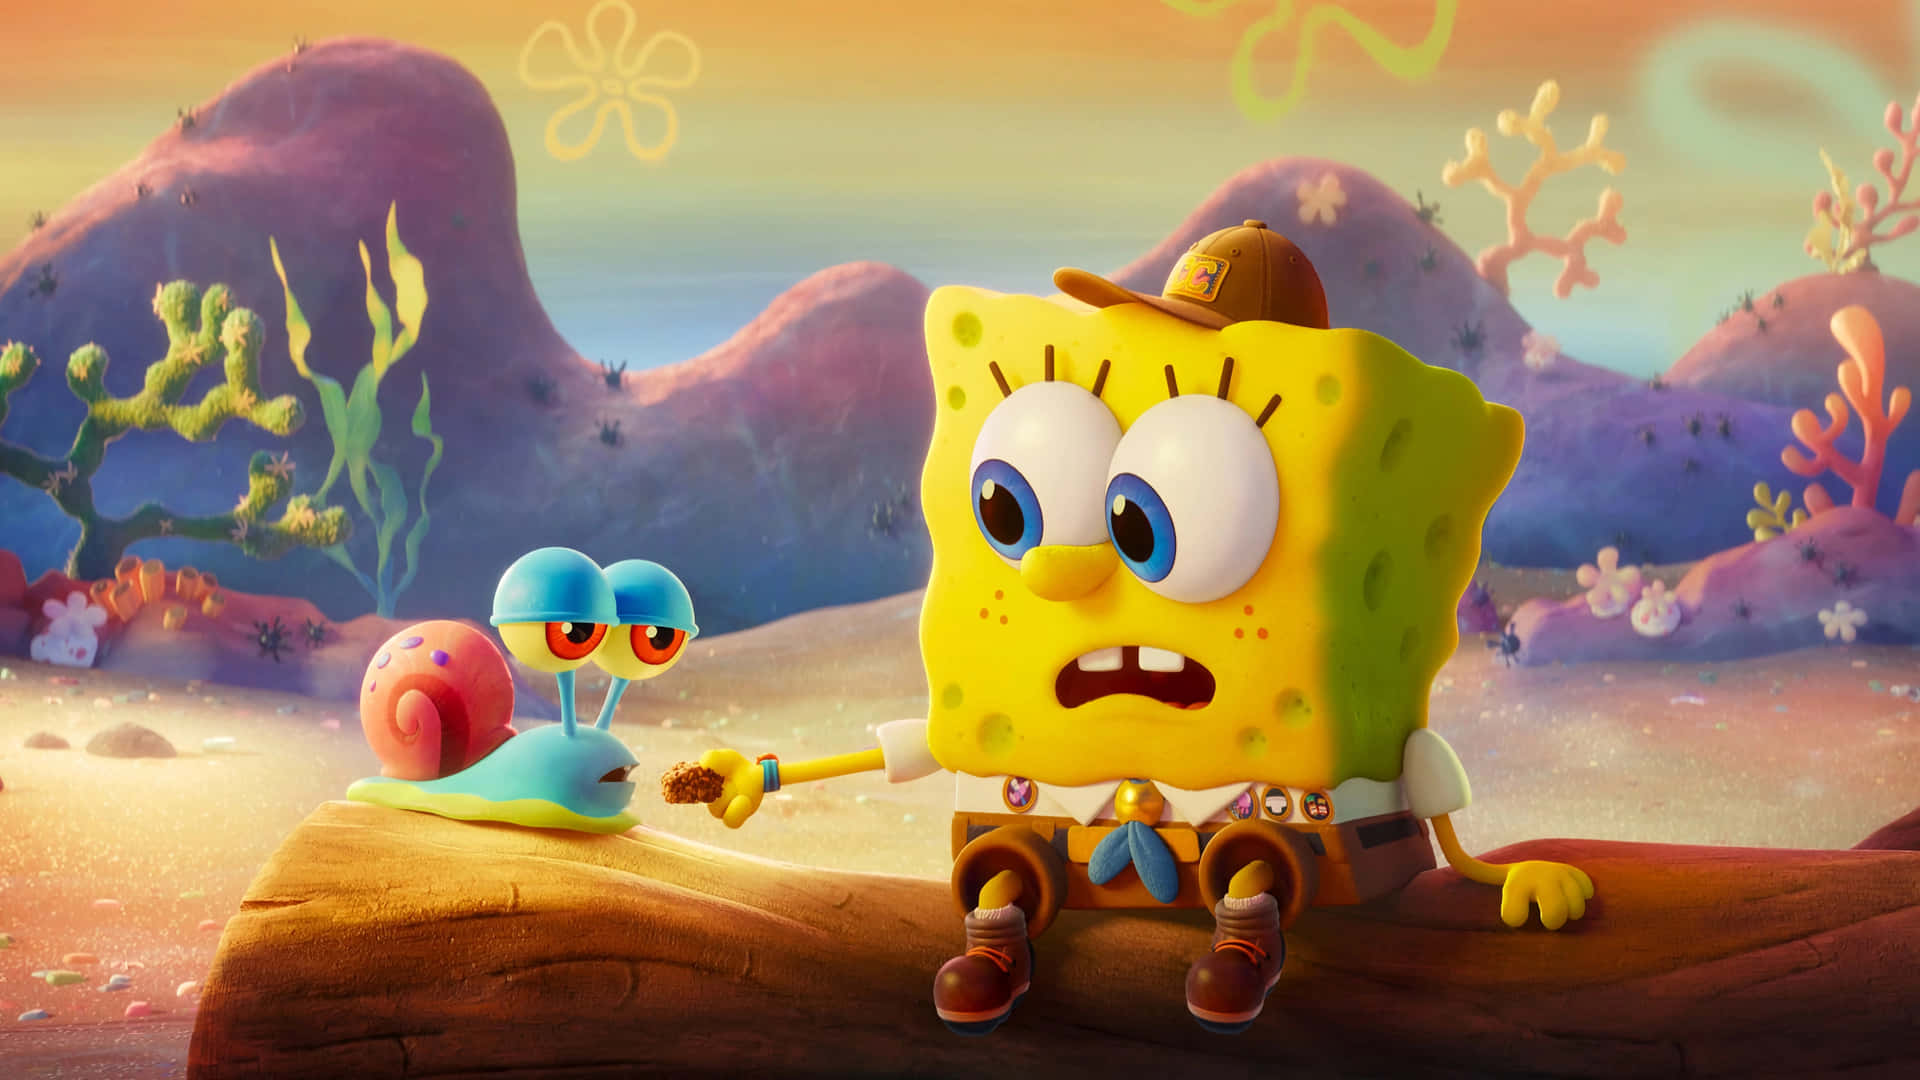 "Be Spongebob's friend!"